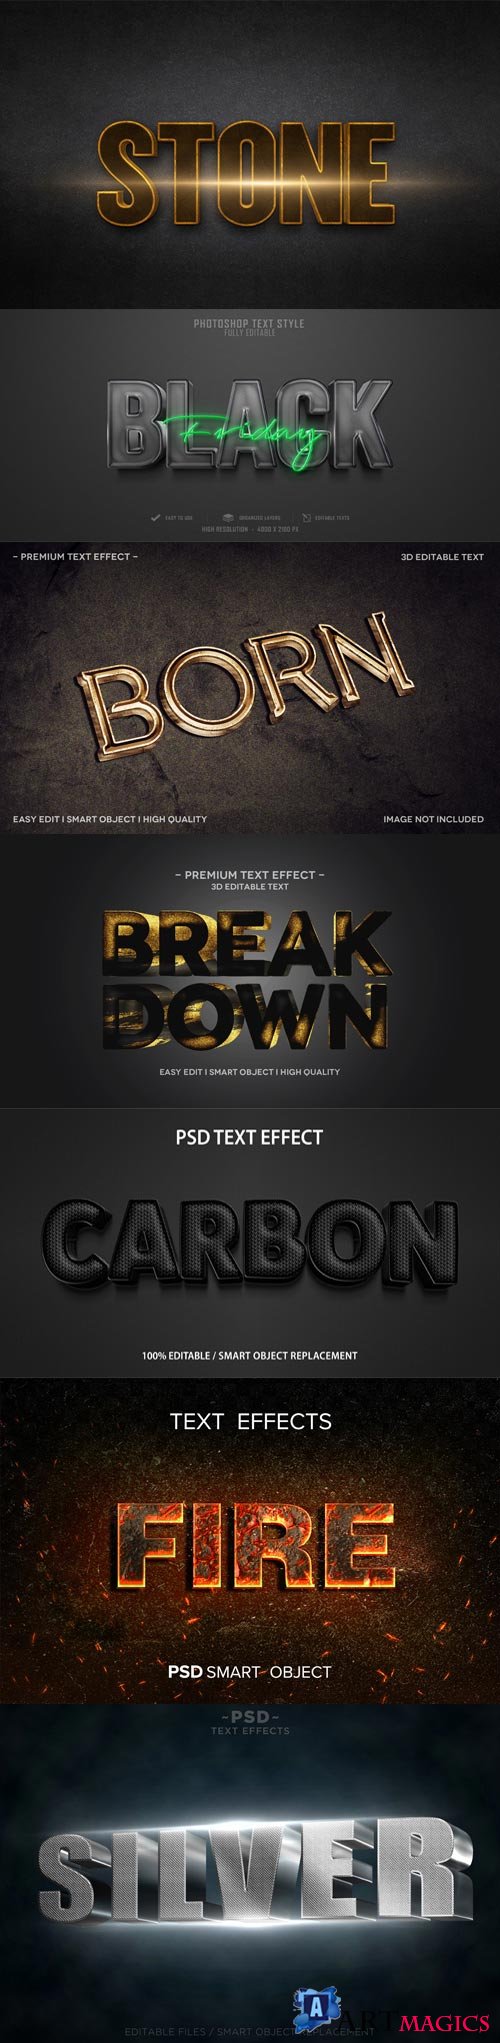 Psd text effect set vol 31